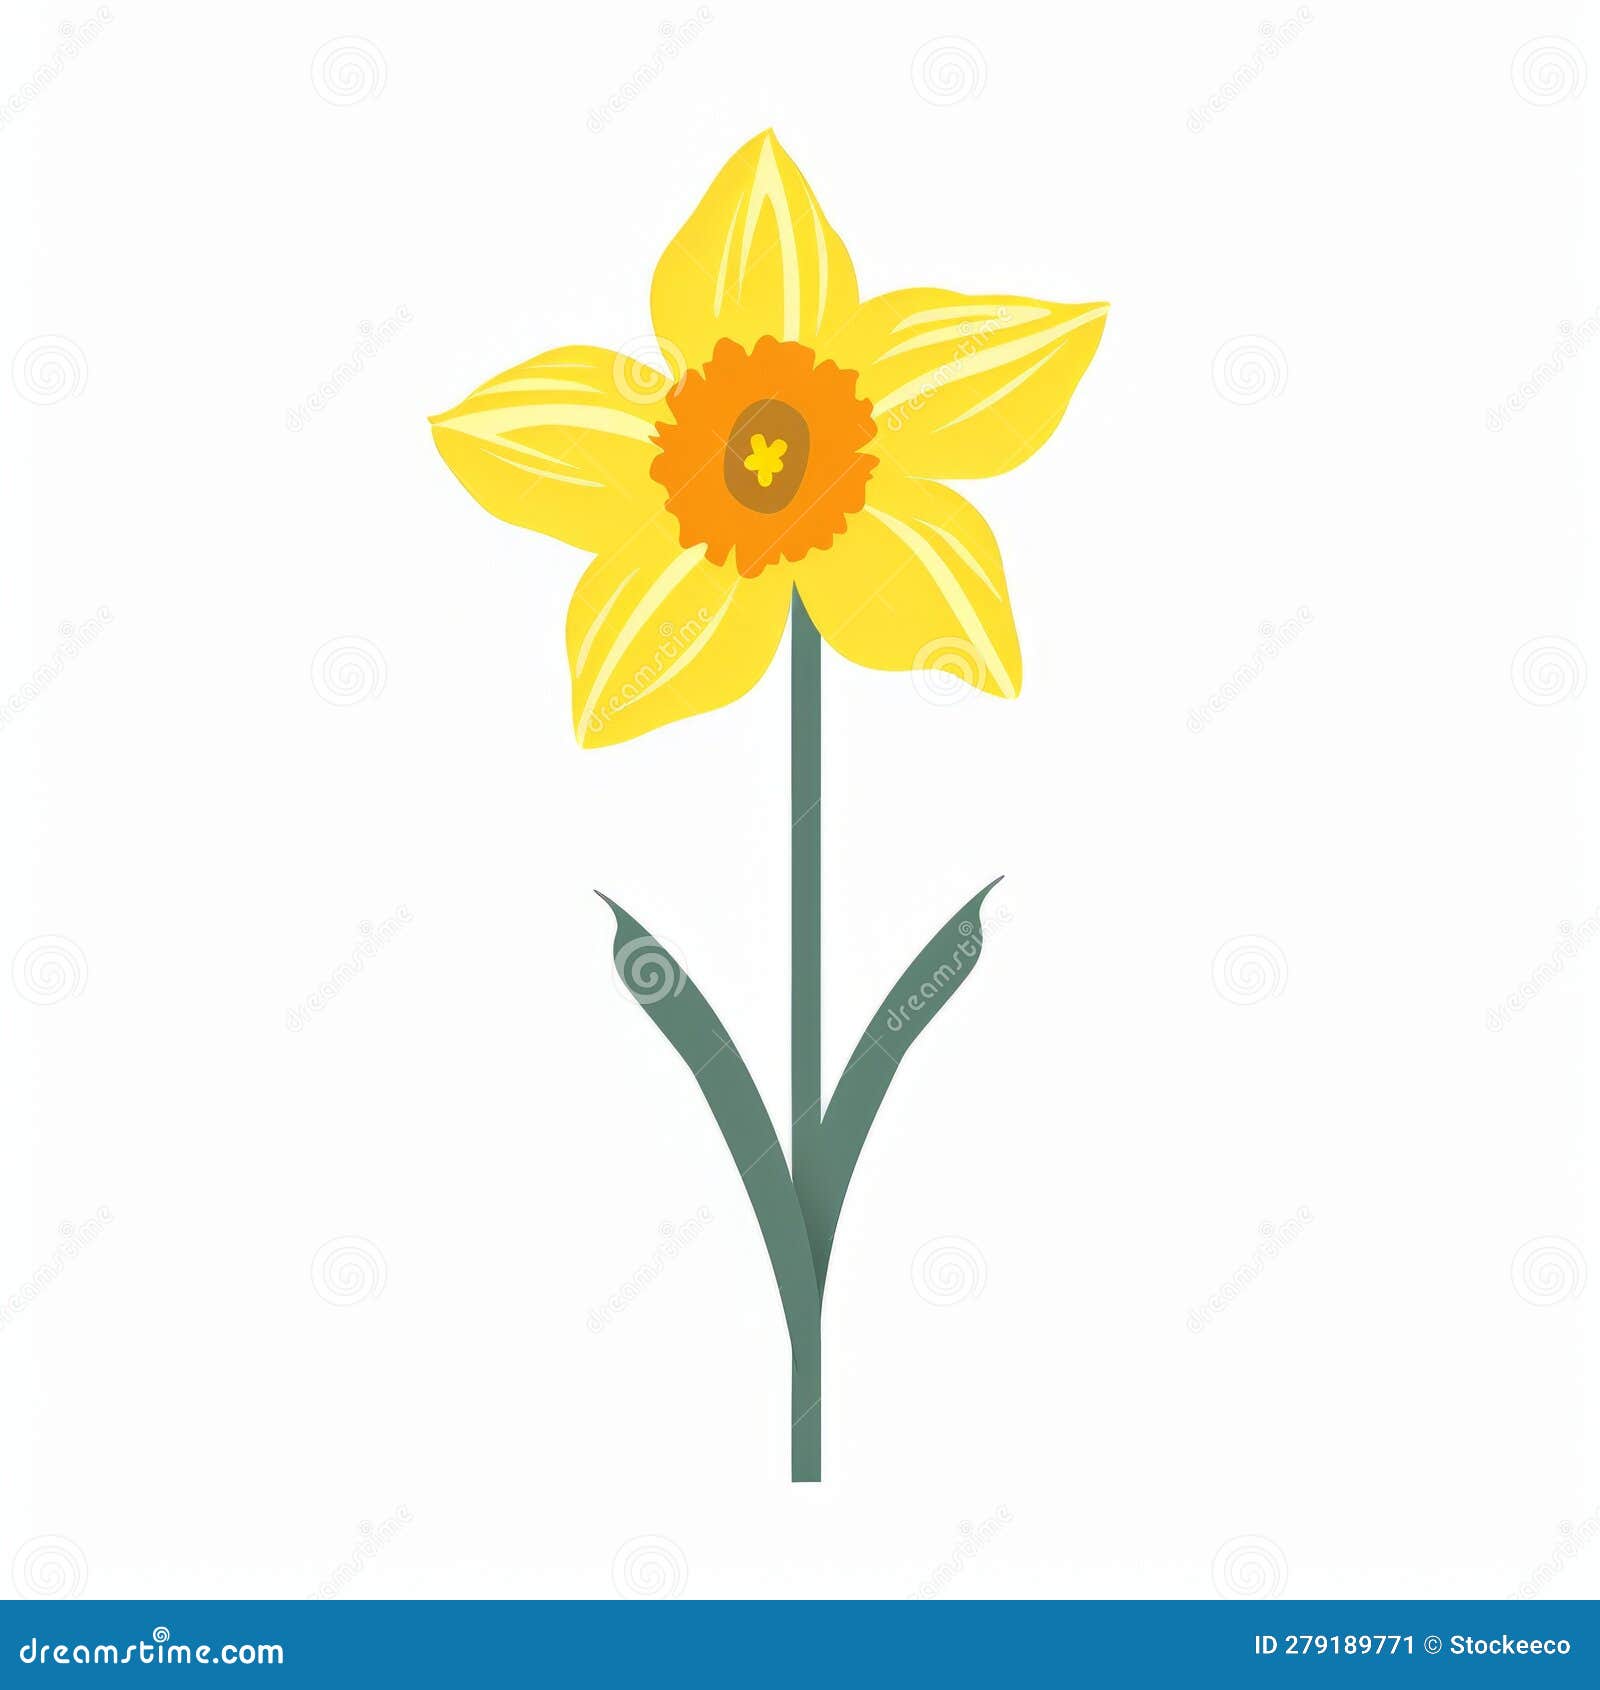 Daffodil Silhouette Vector: Minimalistic Identification Symbol Stock ...